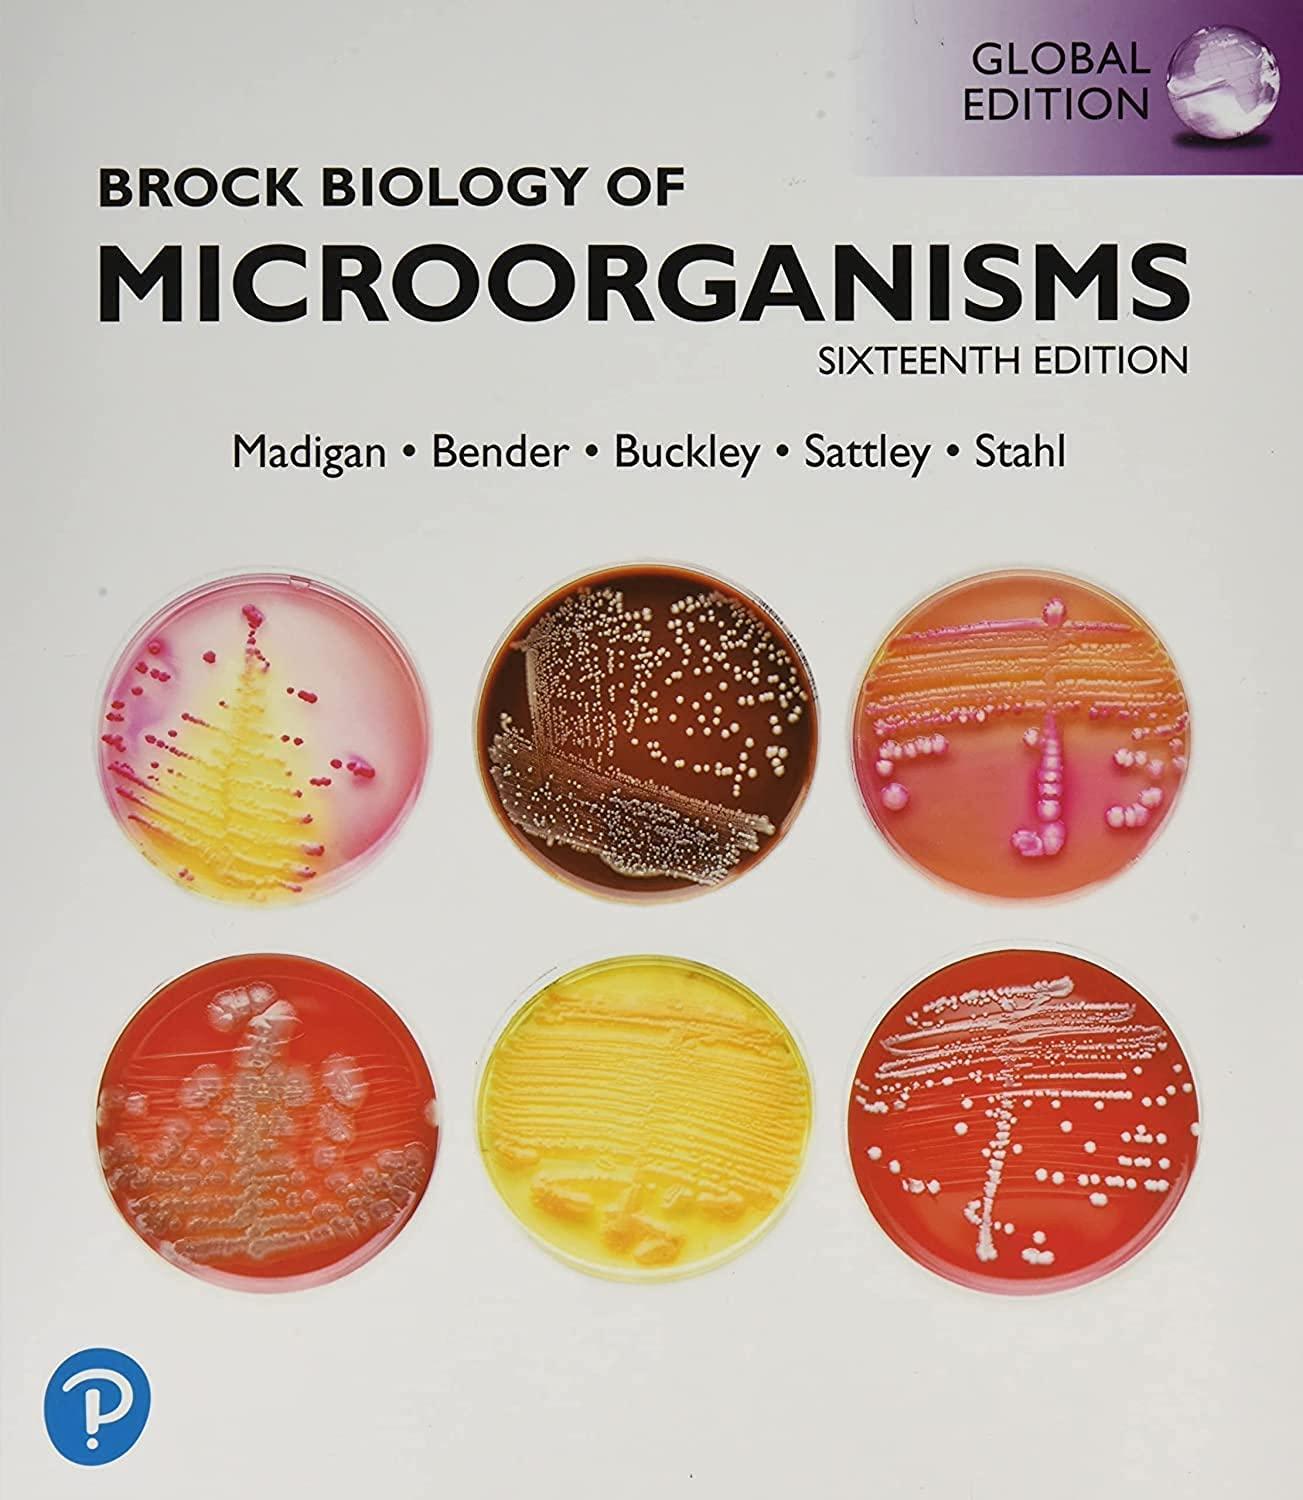 brock biology of microorganisms 16th global edition michael madigan, jennifer aiyer, daniel buckley, w.